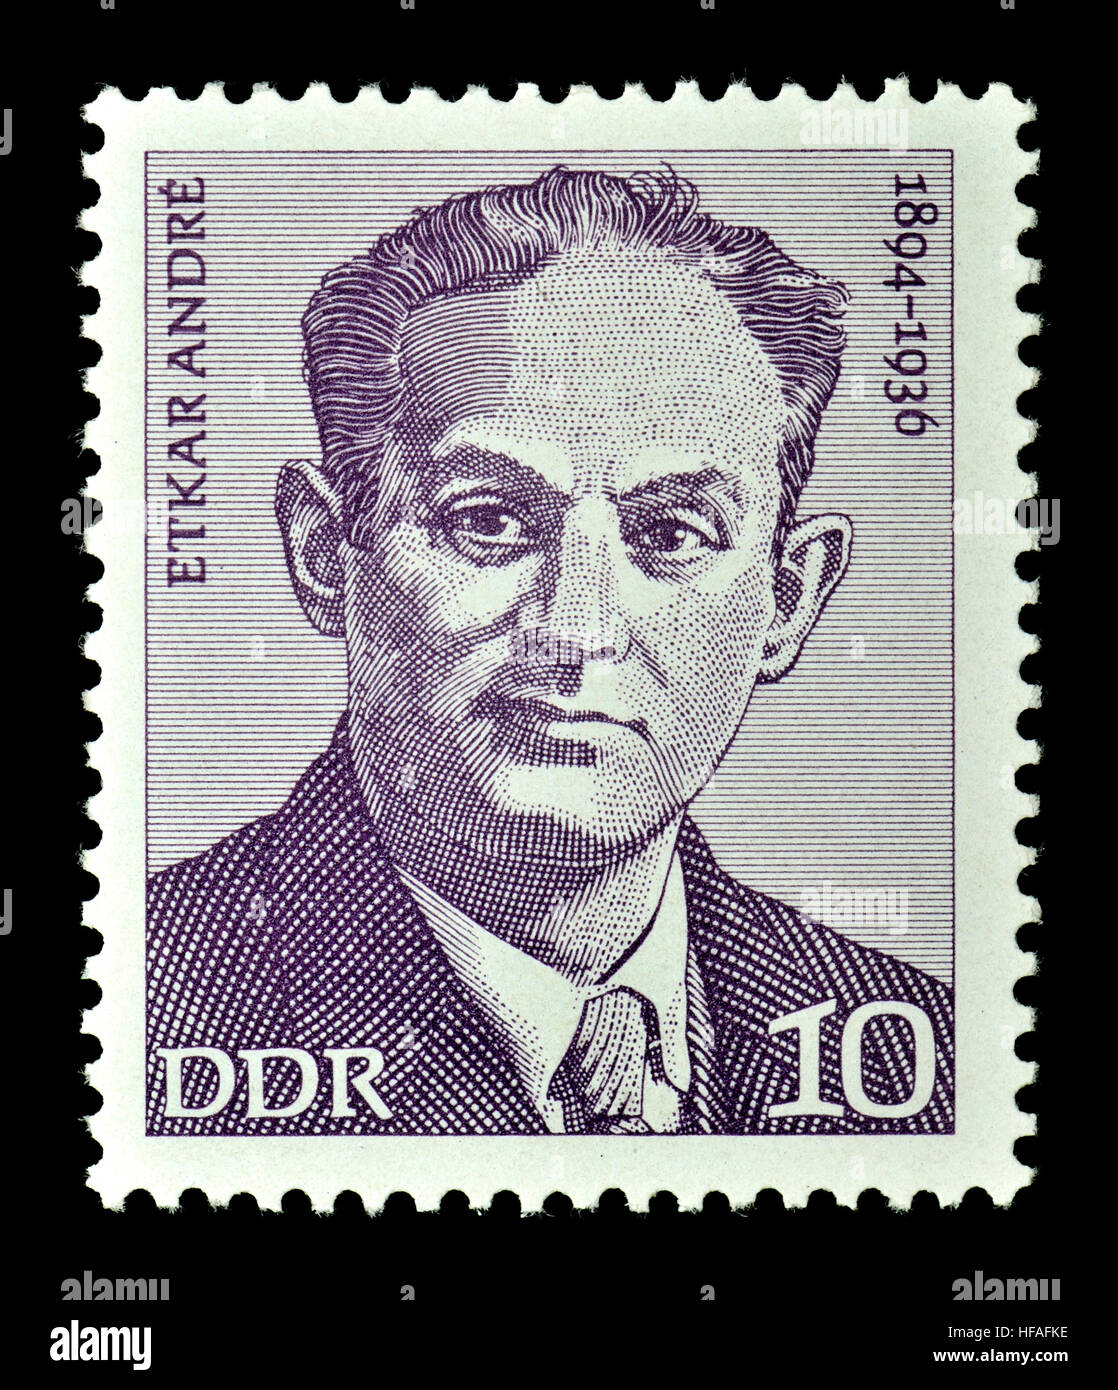 Timbre de l'Allemagne de l'Est (1974) : Edgar / Etkar Josef André (1894 - 1936) politicien communiste et antifasciste. Banque D'Images